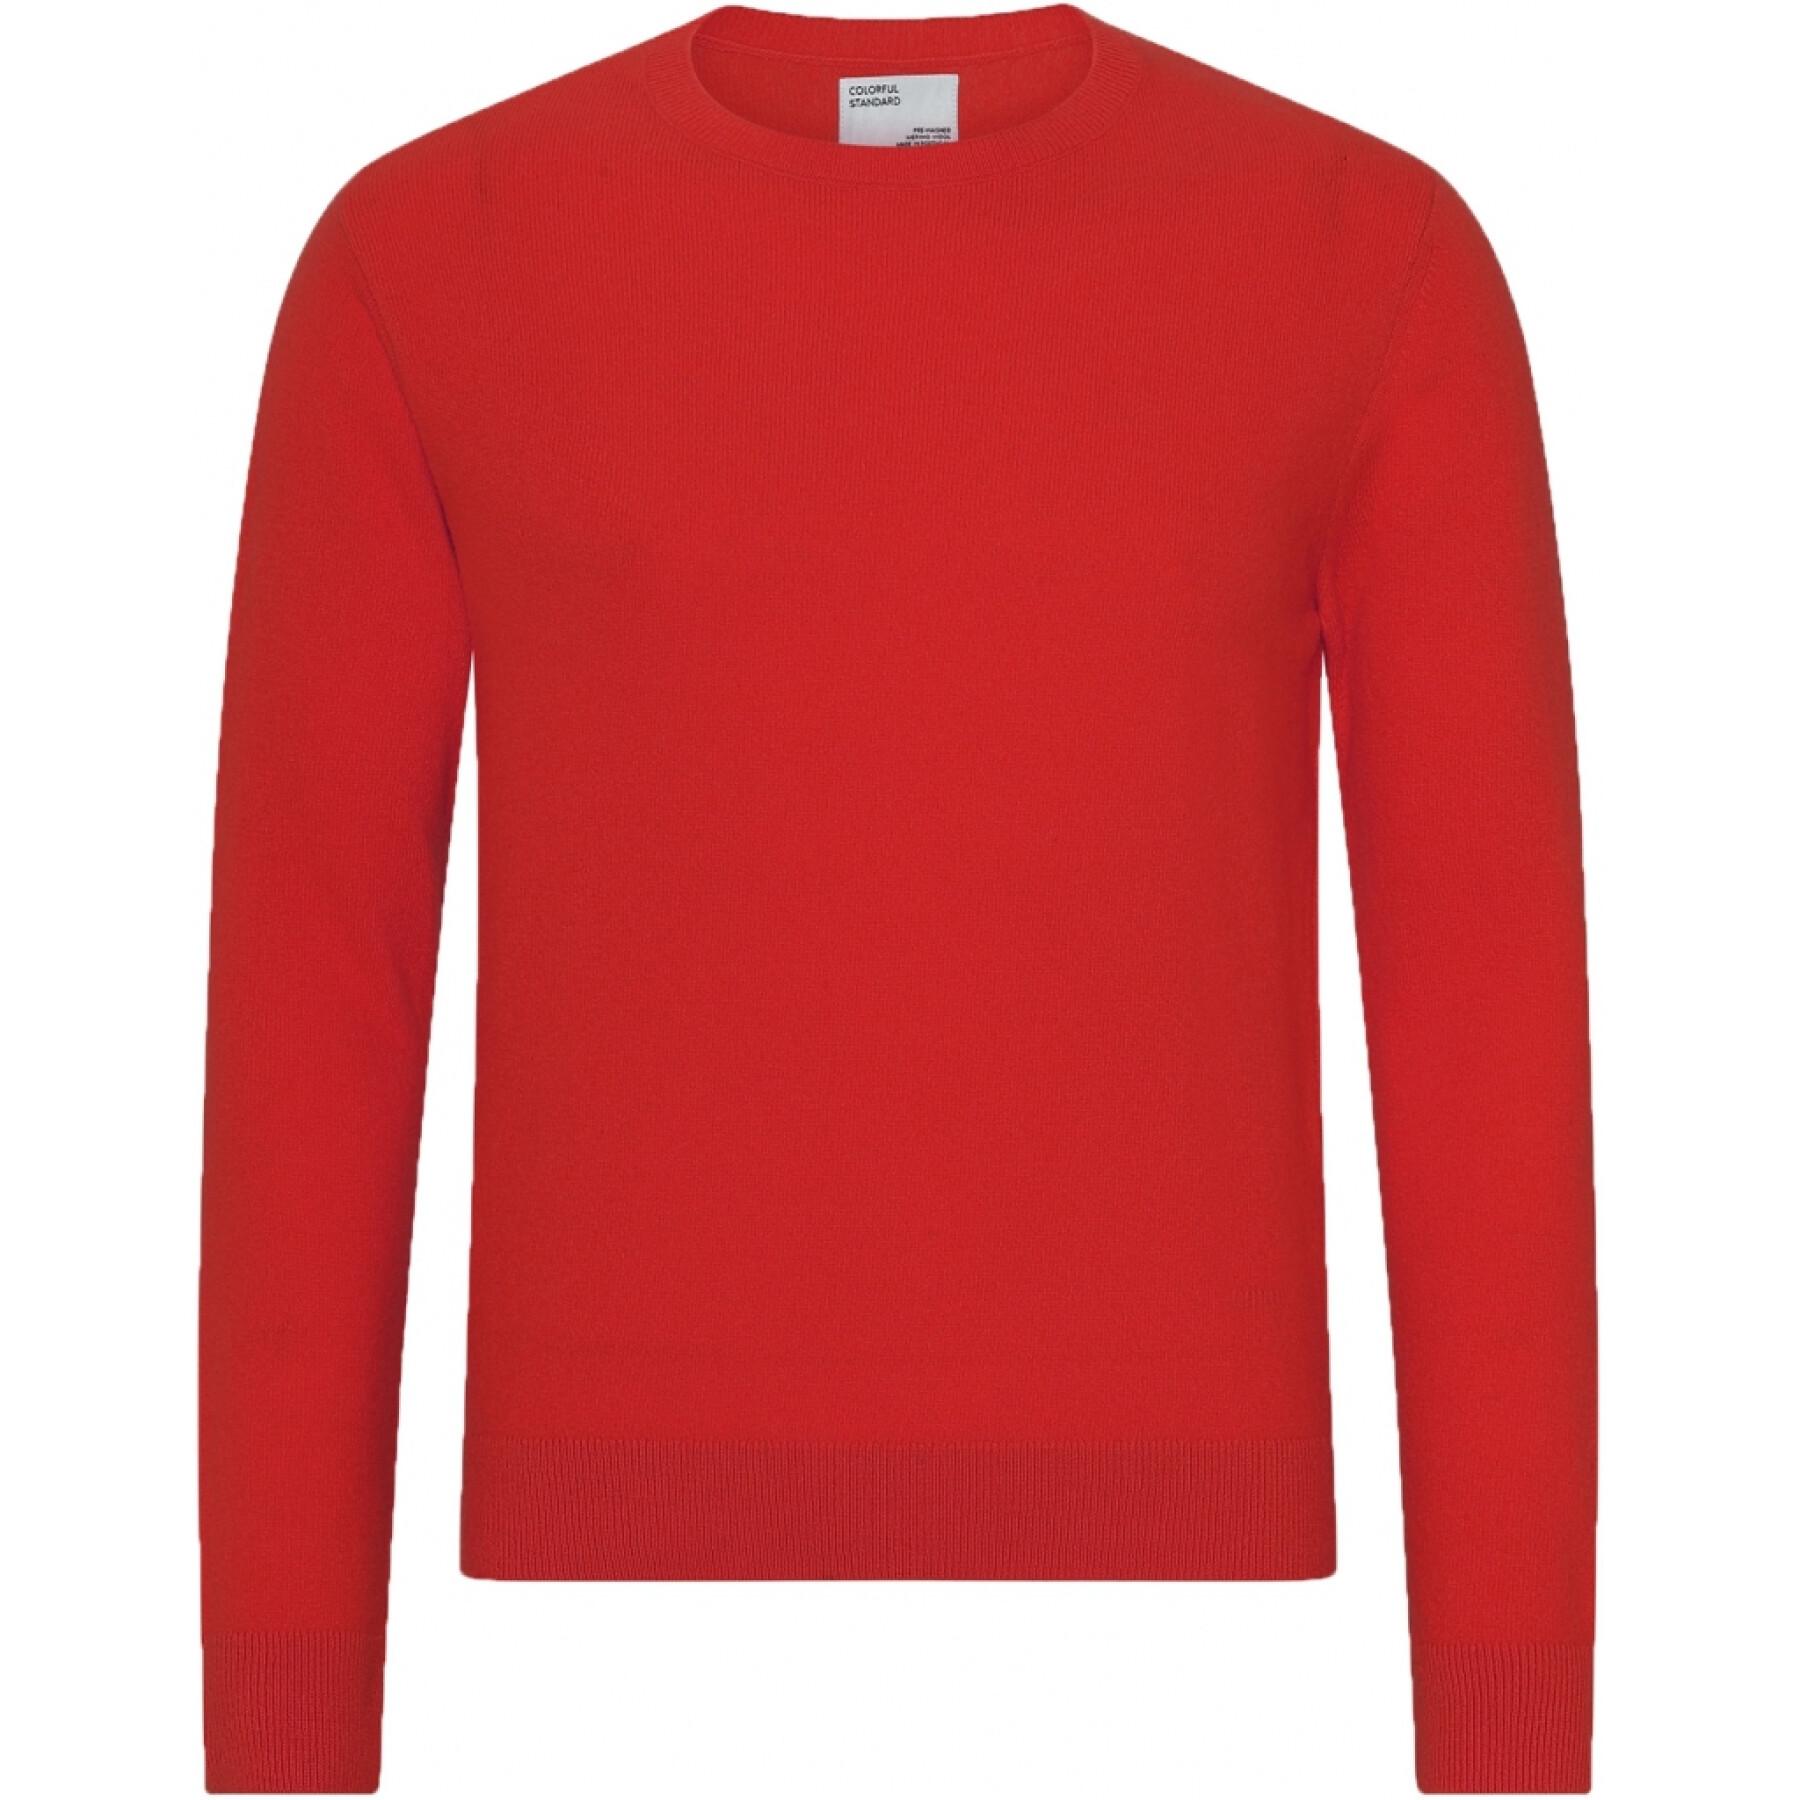 Saltador de lã com pescoço redondo Colorful Standard Light Merino scarlet red